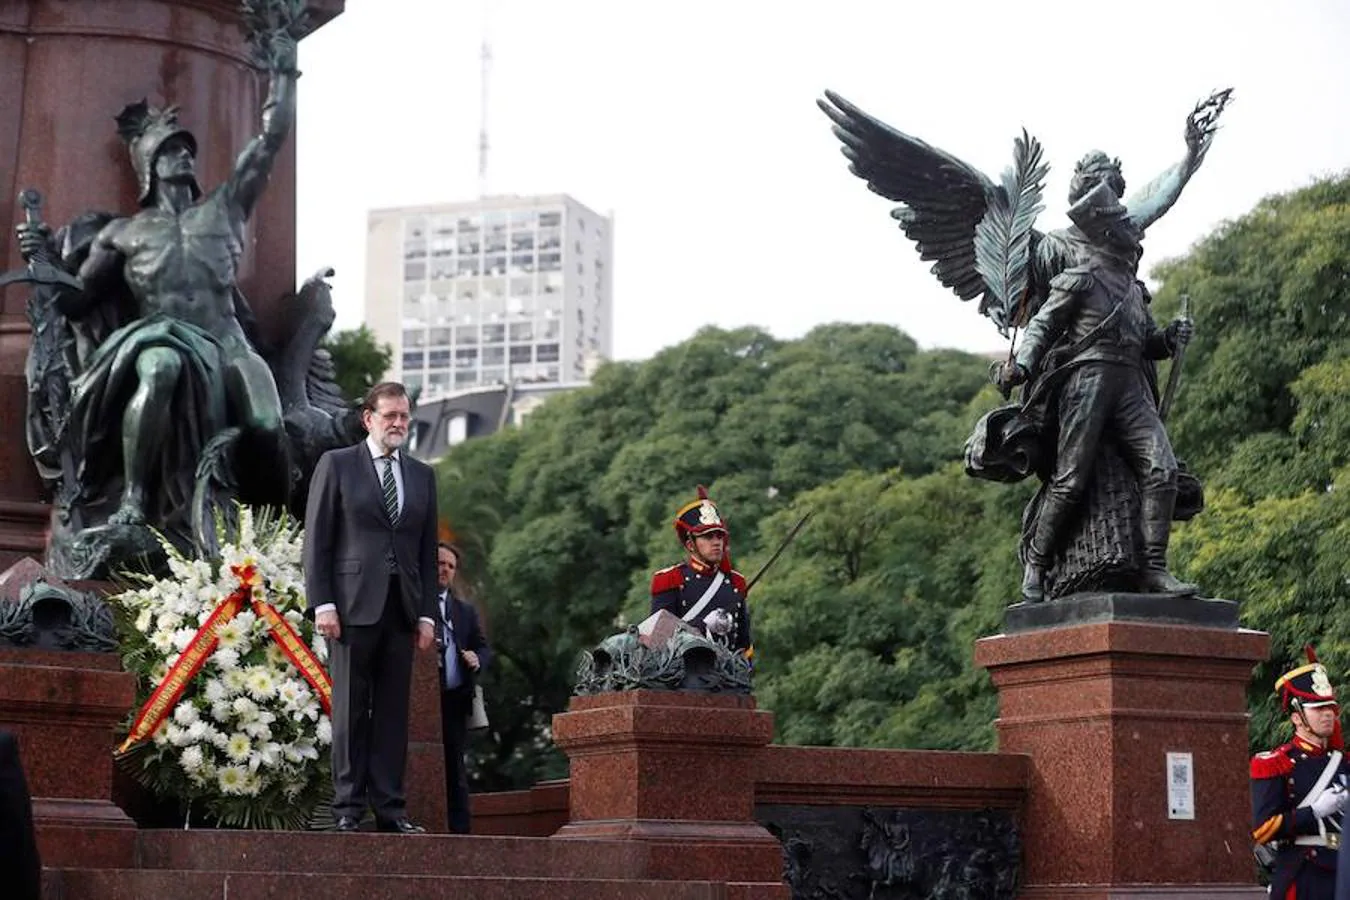 La visita de estado de Rajoy a Argentina, en imágenes. El presidente del Gobierno de España, Mariano Rajoy ha encabezado un homenaje al libertador argentino José de San Martín en la plaza que lleva su nombre en Buenos Aires.